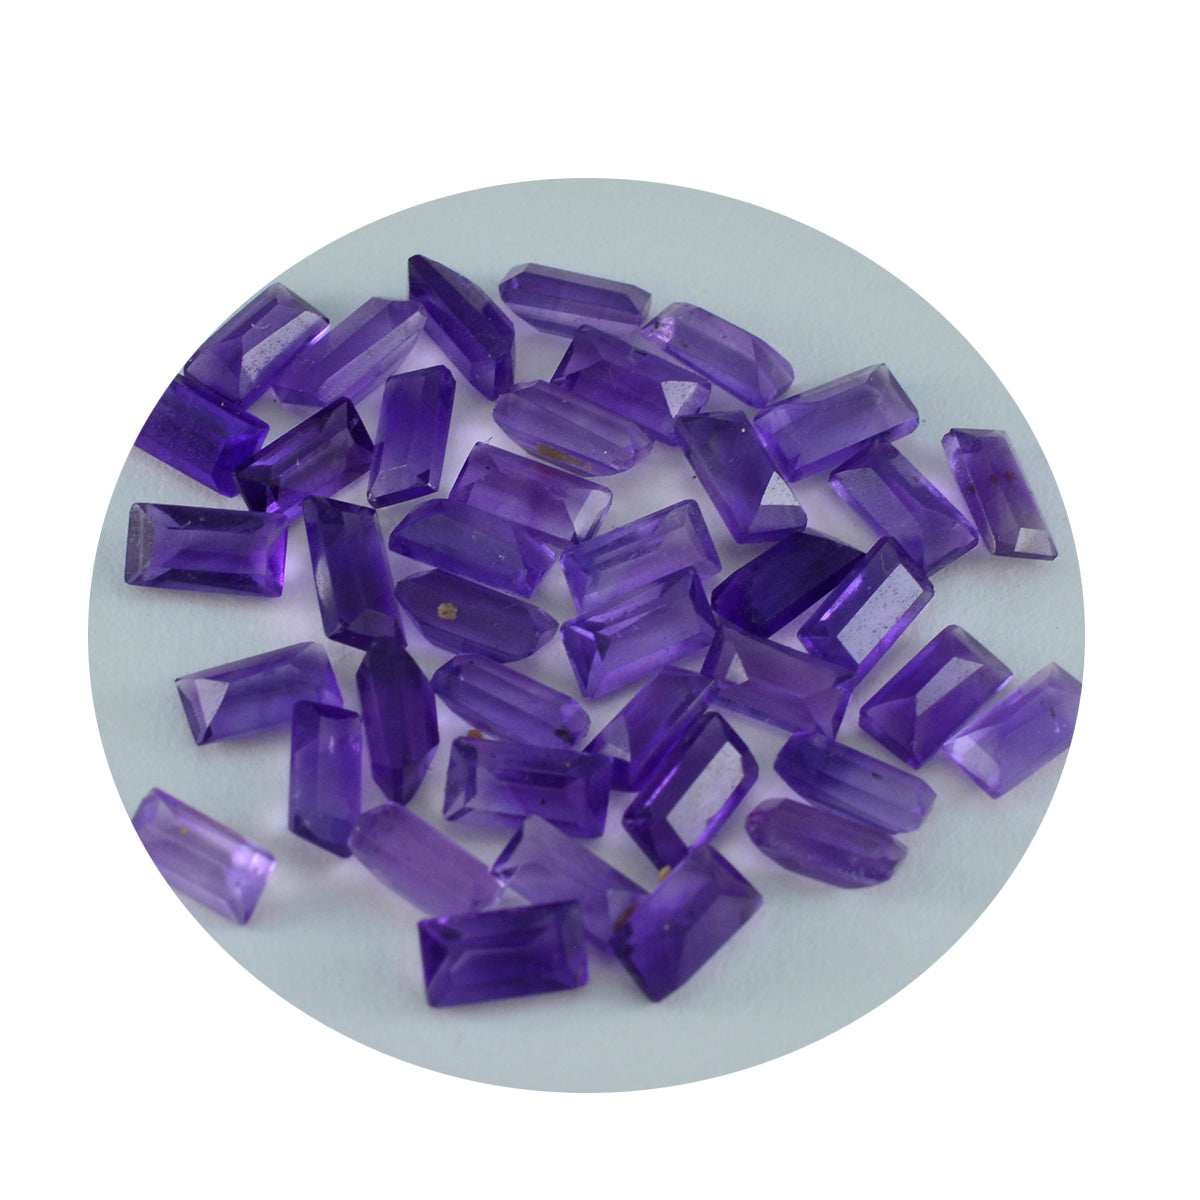 Riyogems 1PC Genuine Purple Amethyst Faceted 4x8 mm Baguett Shape nice-looking Quality Loose Gemstone